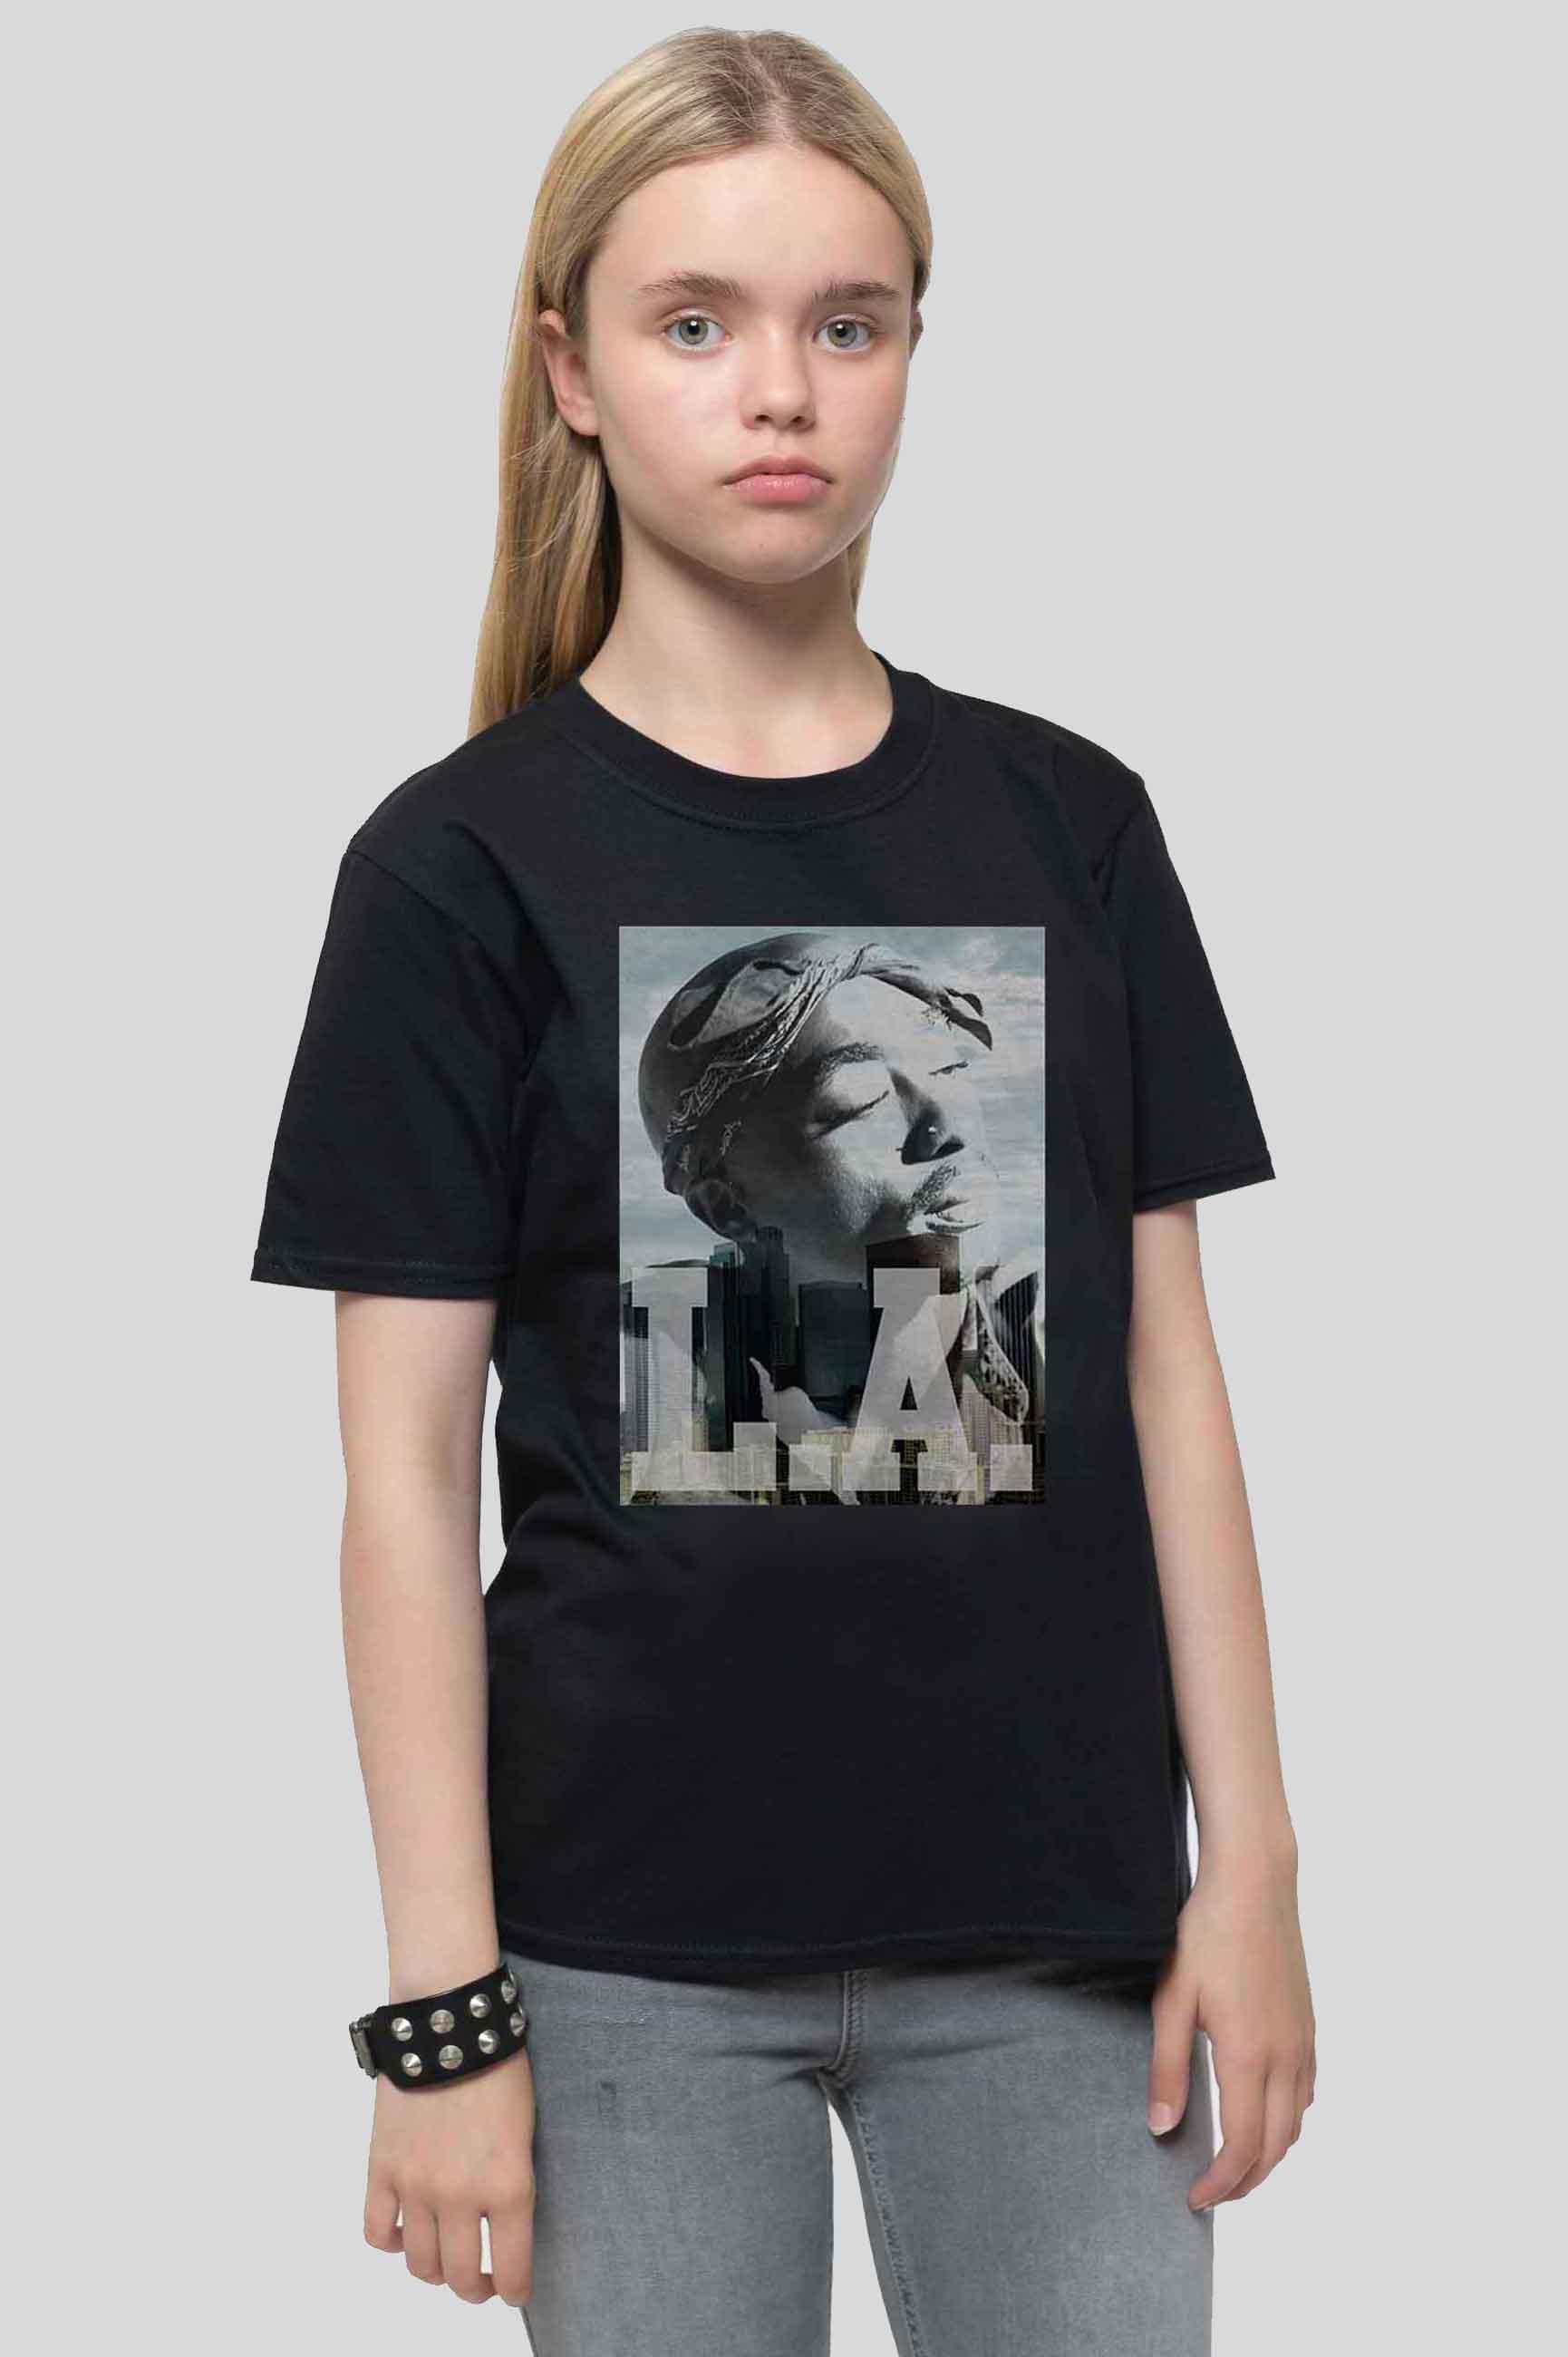 LA Skyline Portrait T Shirt